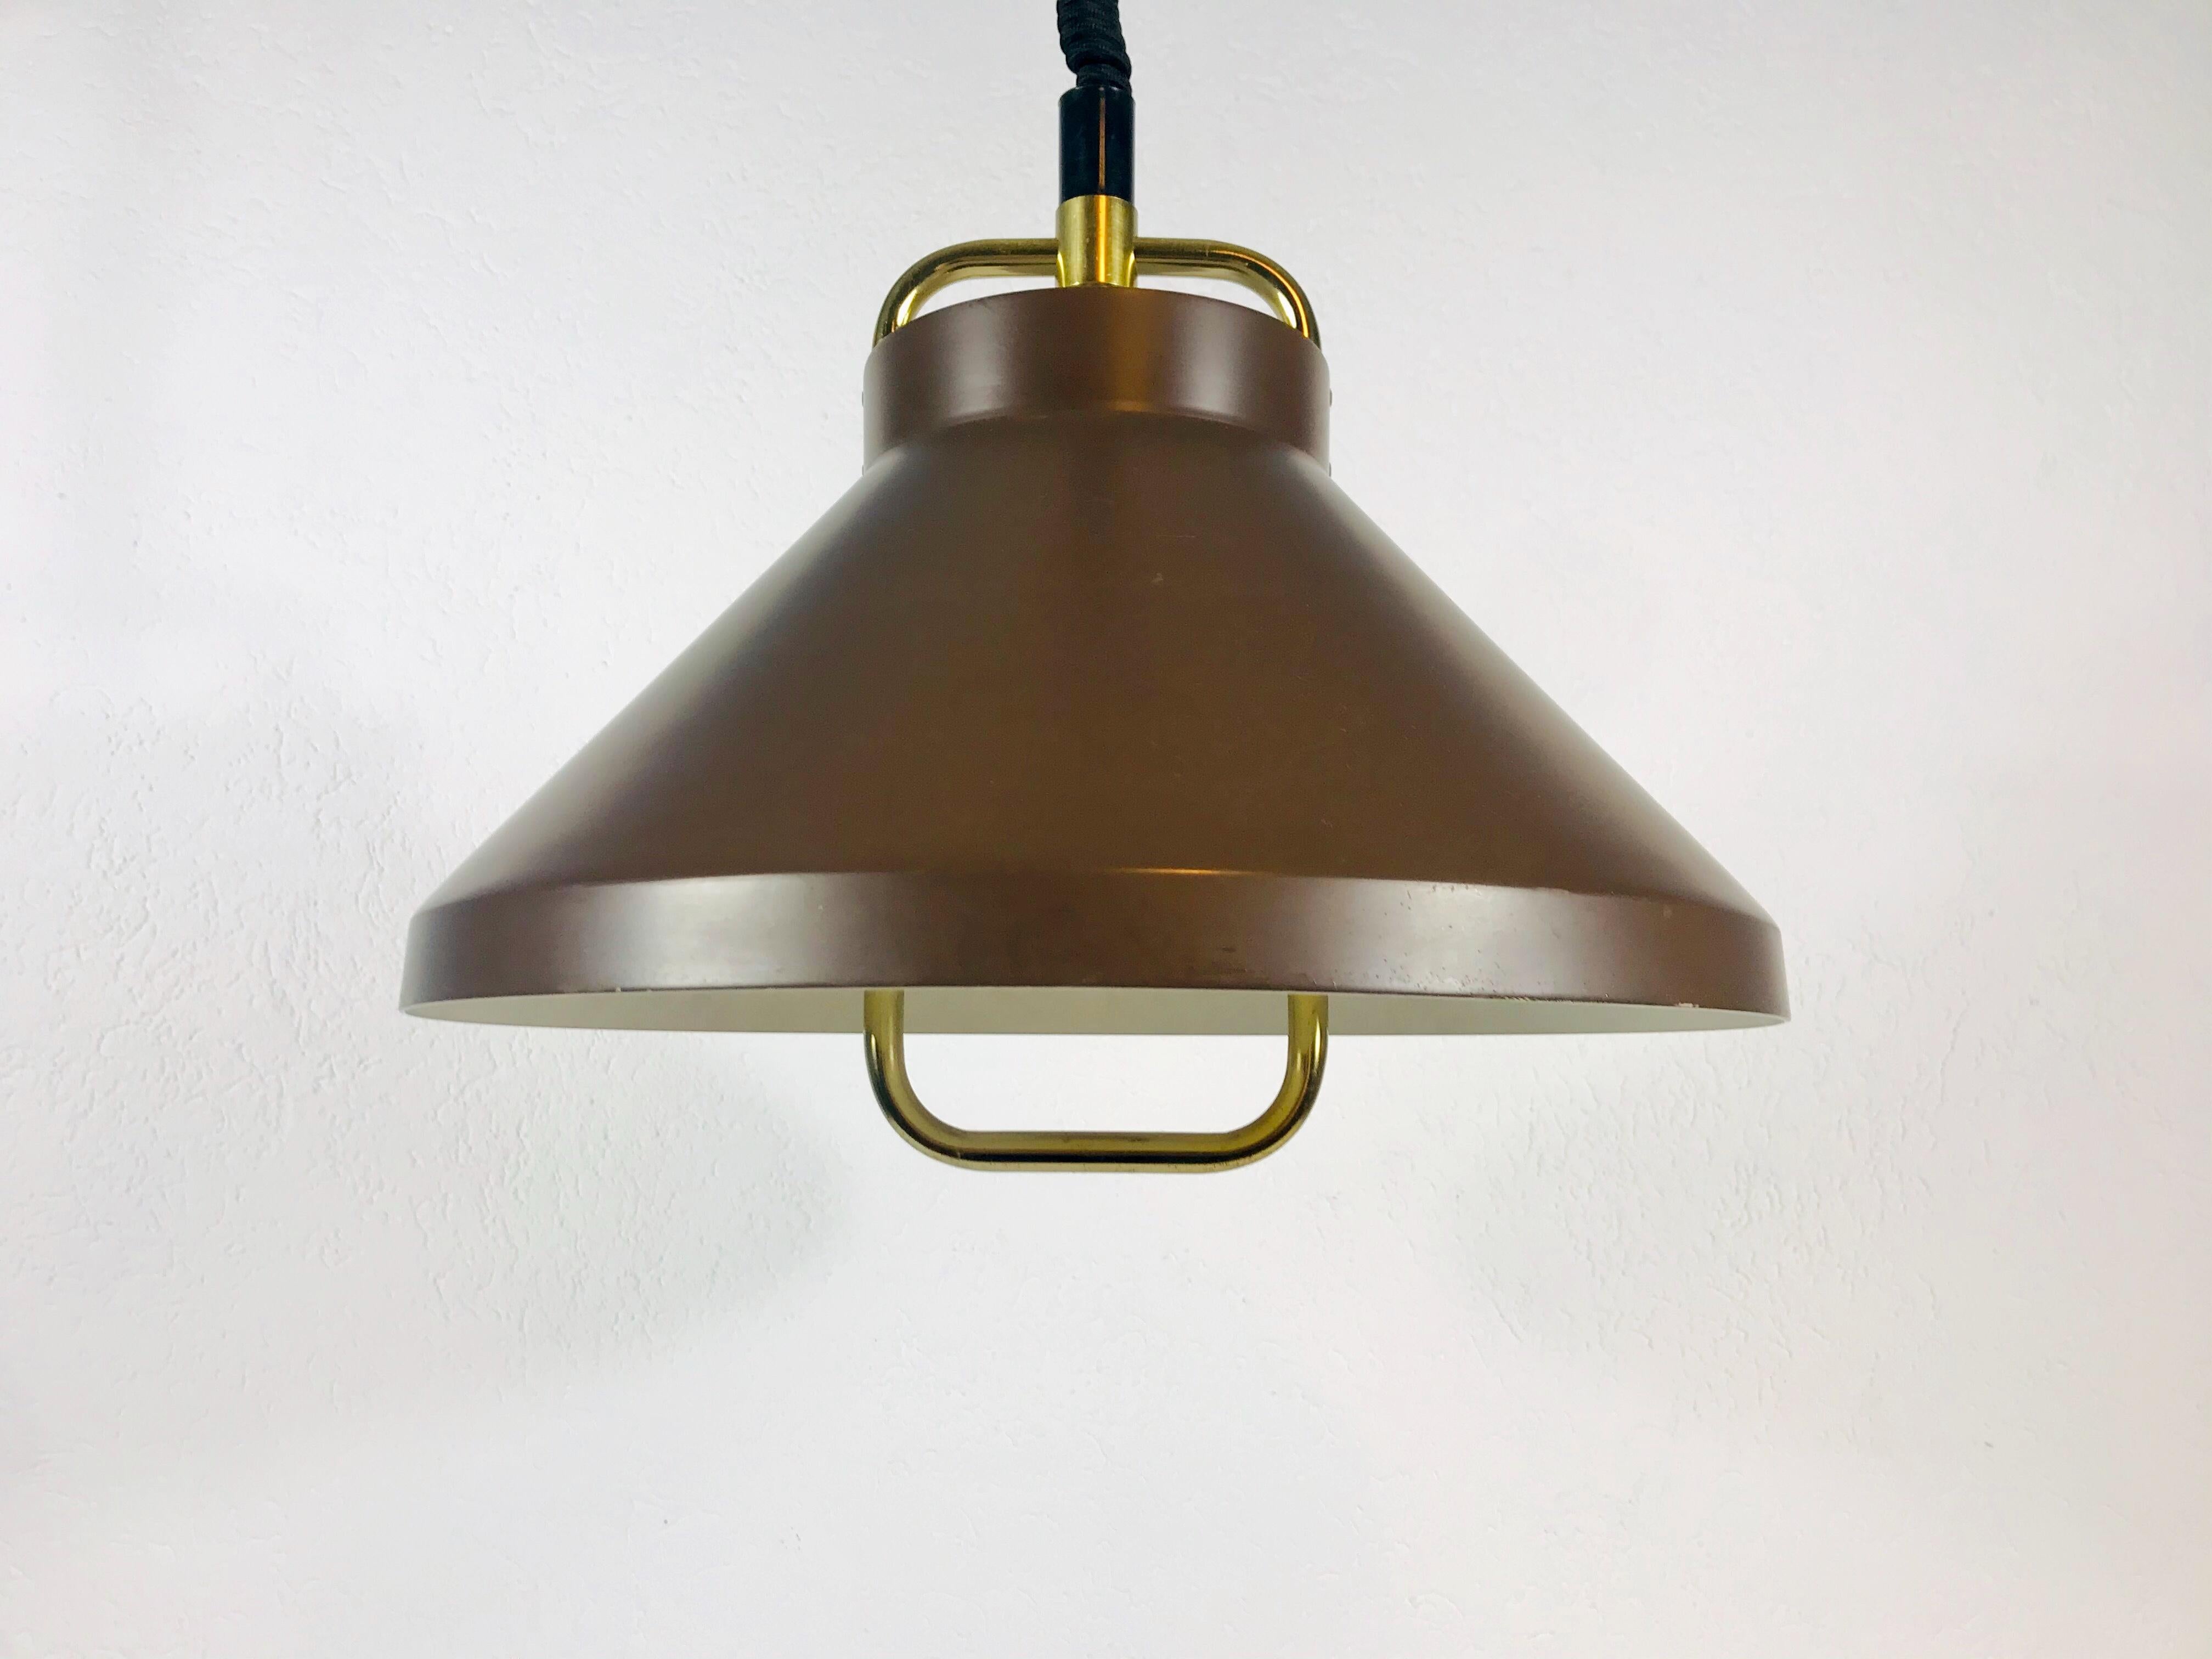 Lampe pendante marron de Fog et Mørup fabriquée au Danemark dans les années 1970. La lumière a la forme d'un chapeau de sorcière. Il est fabriqué en aluminium fin.

Mesures : Hauteur 65 - 100 cm

Le luminaire nécessite une ampoule E27.
 